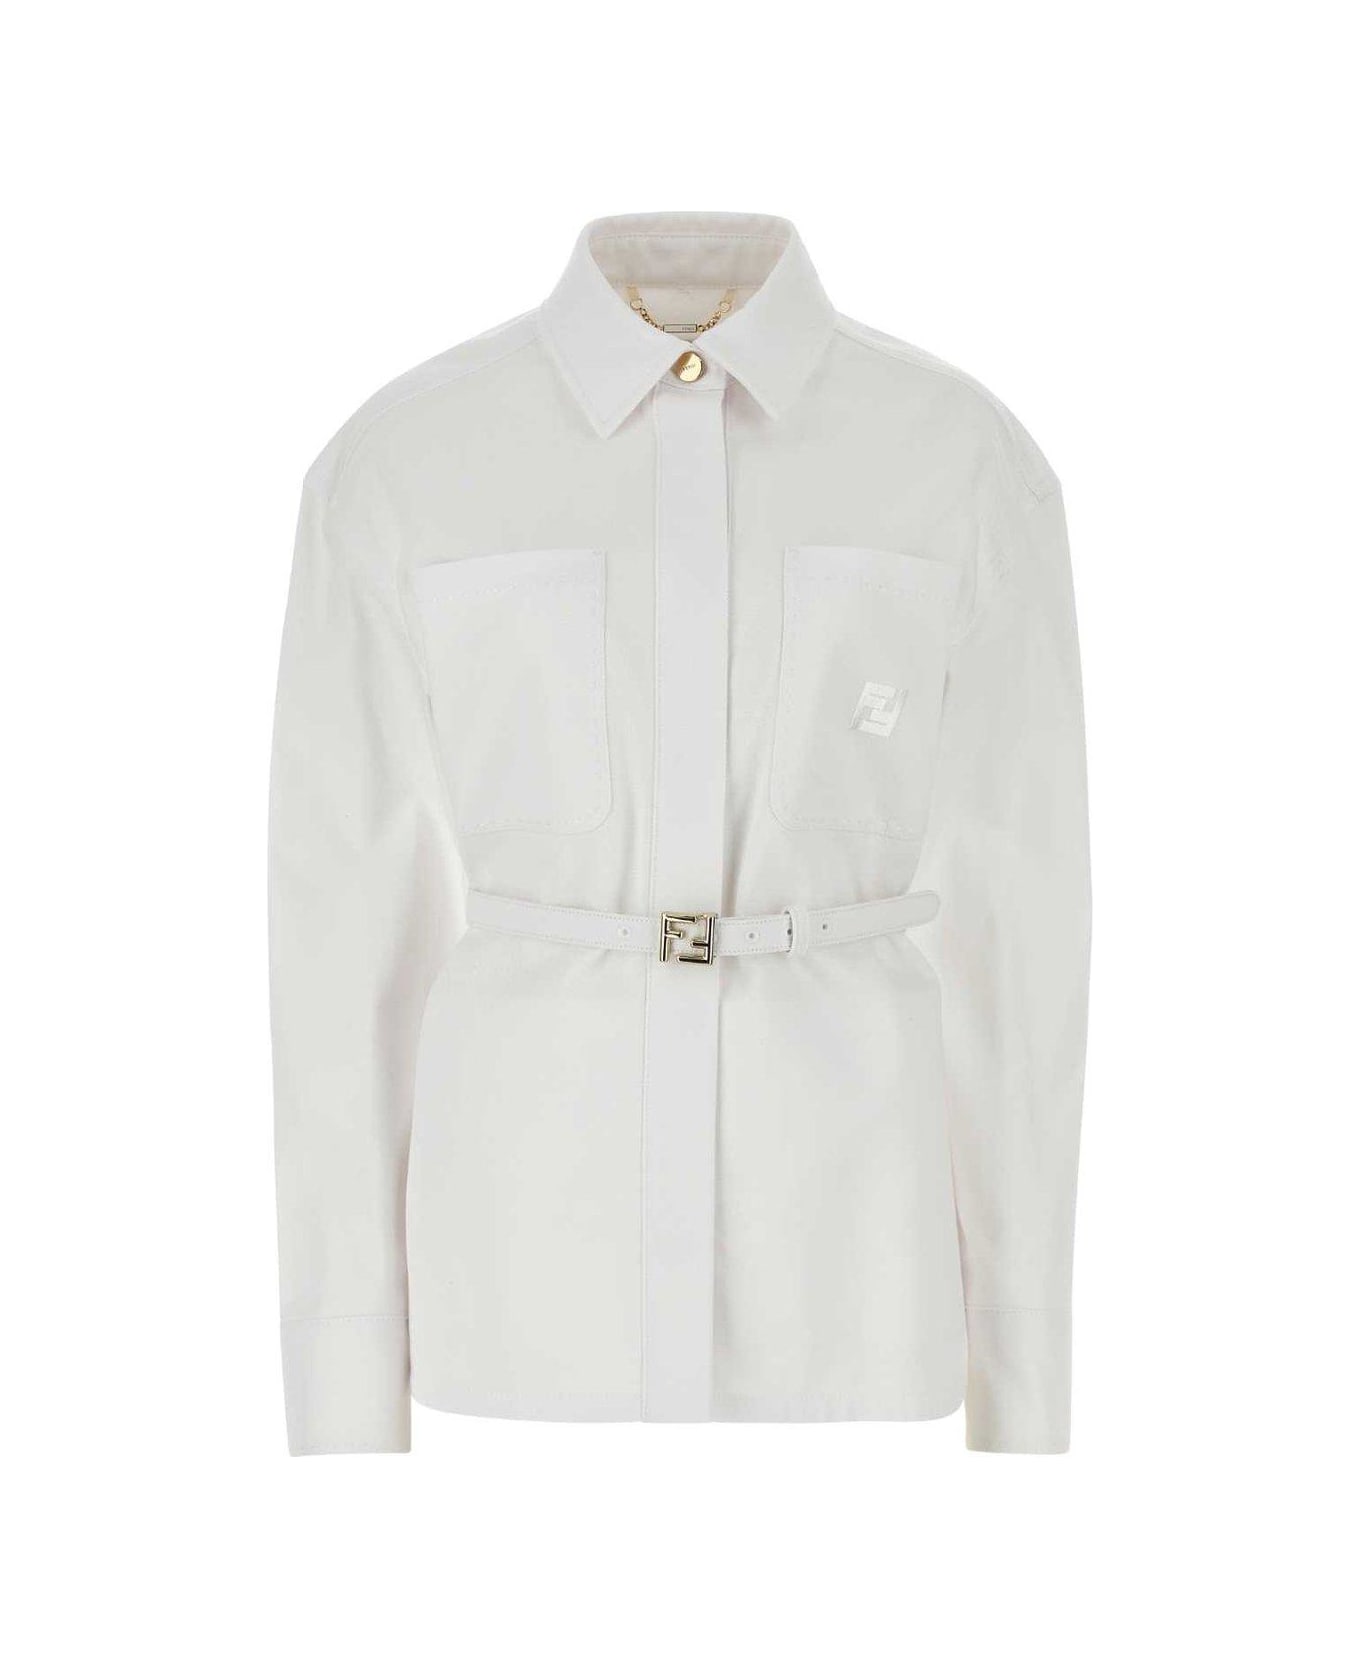 Fendi Belted Collared Jacket - White